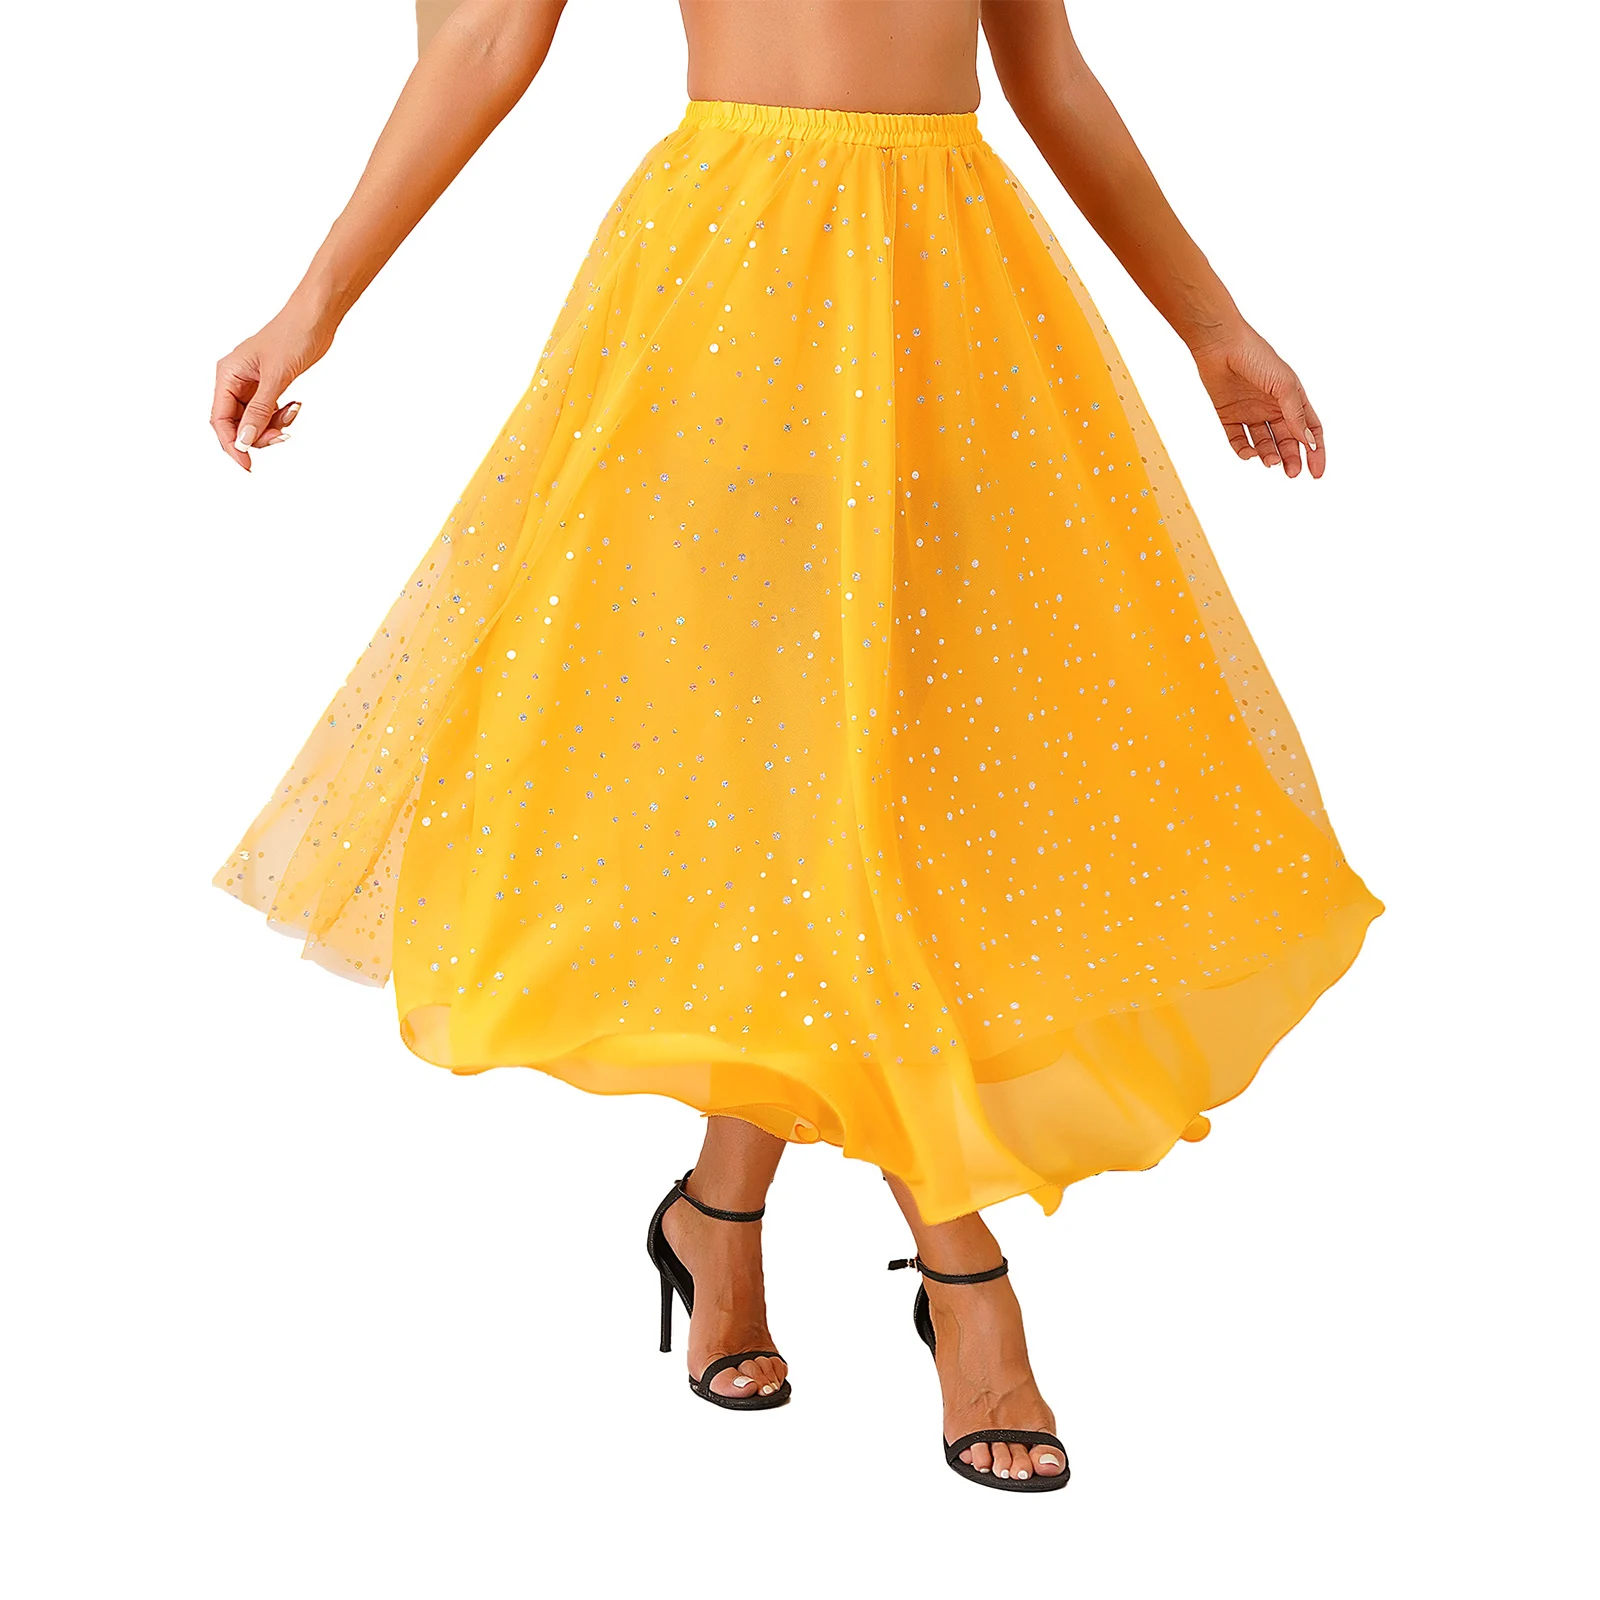 женская юбка для танца живота желтая юбка для восточного танца живота без пояса Женская юбка с блестками для танца живота